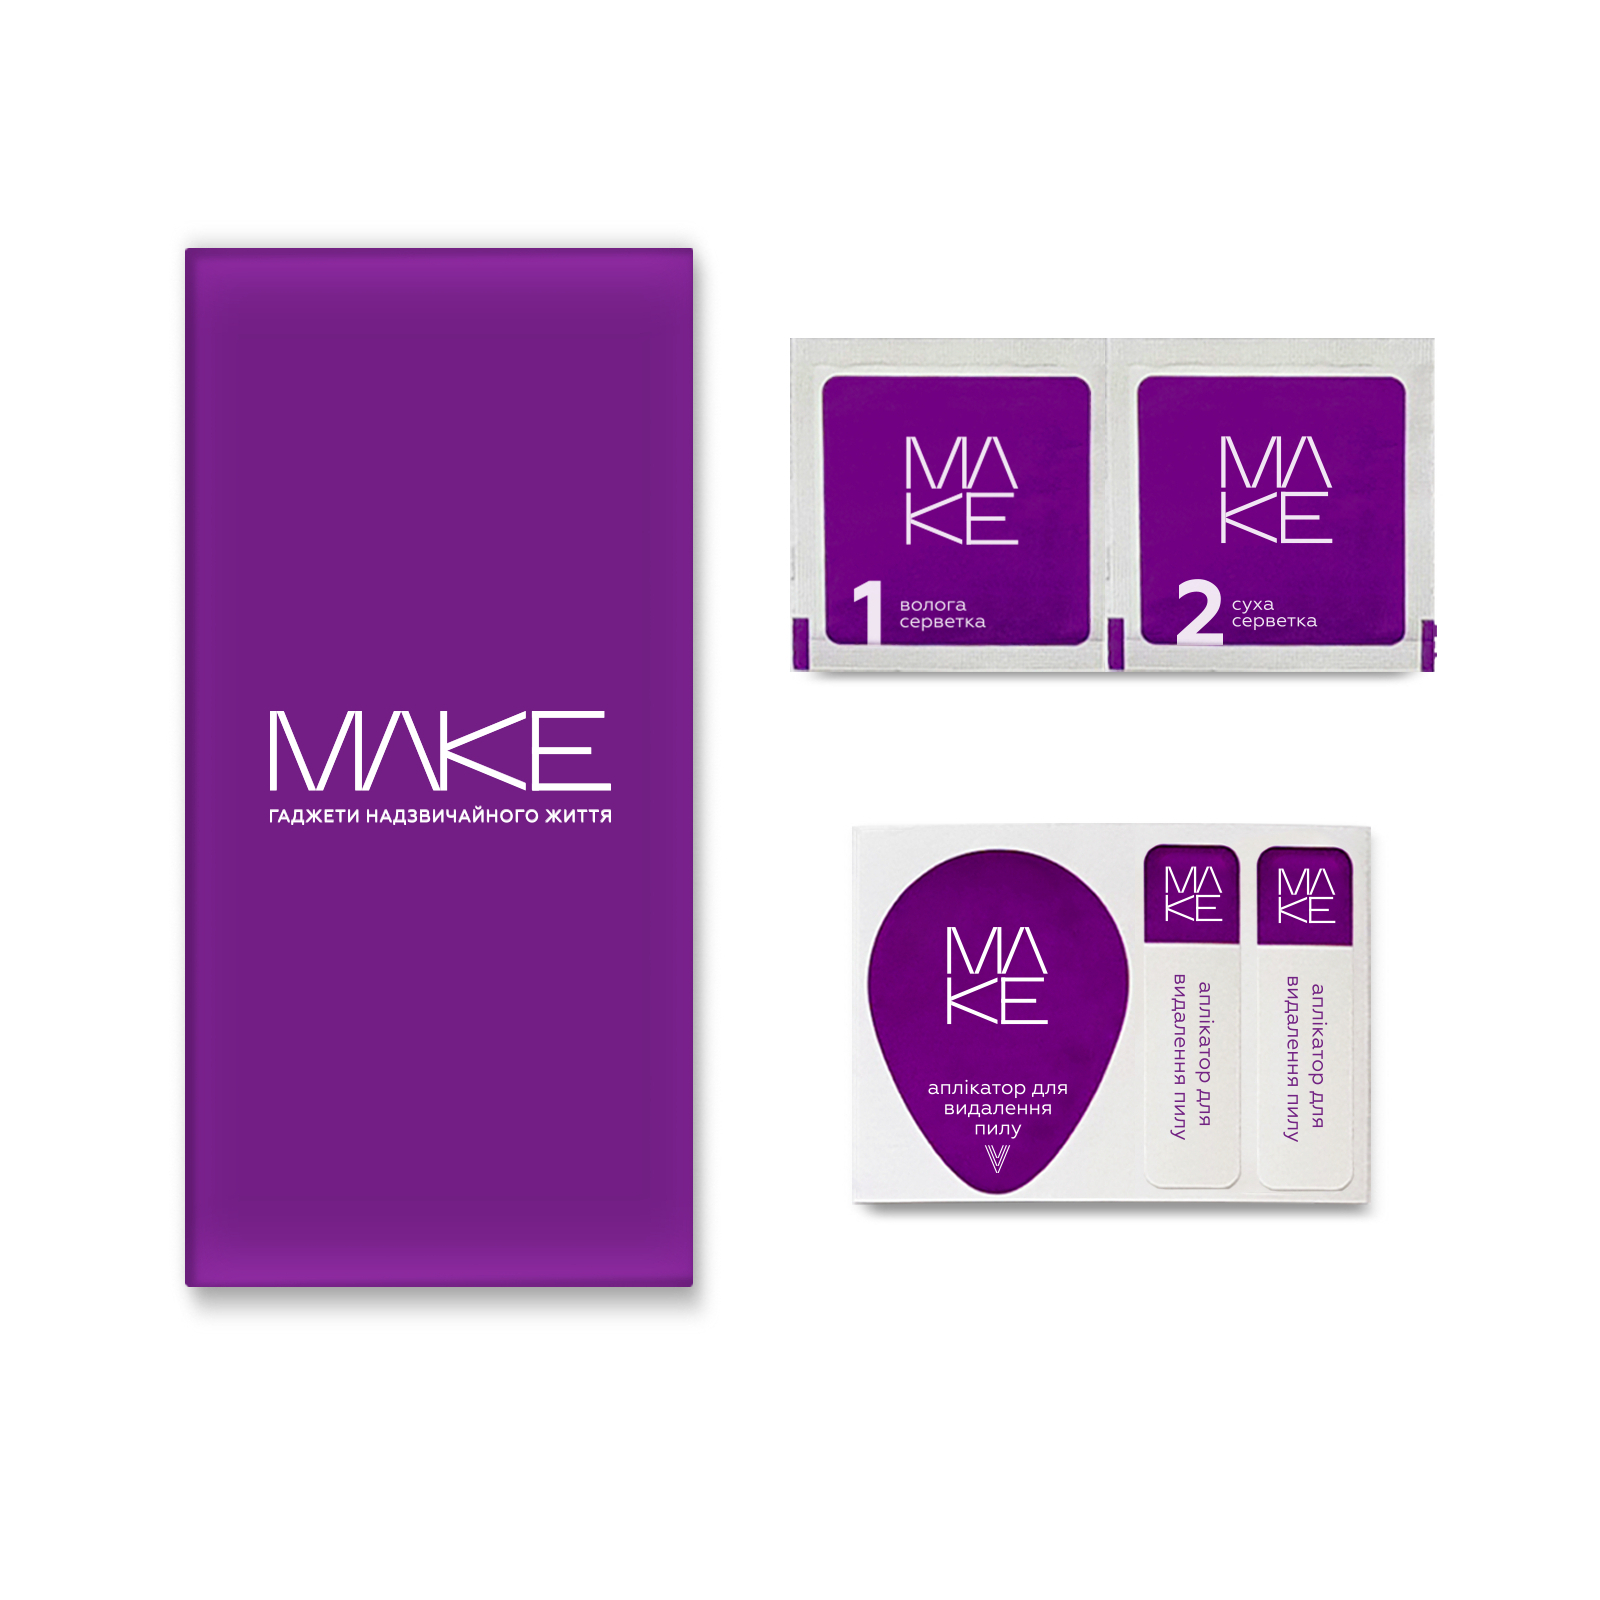 Стекло защитное MAKE Samsung M54 (MGF-SM54) изображение 2